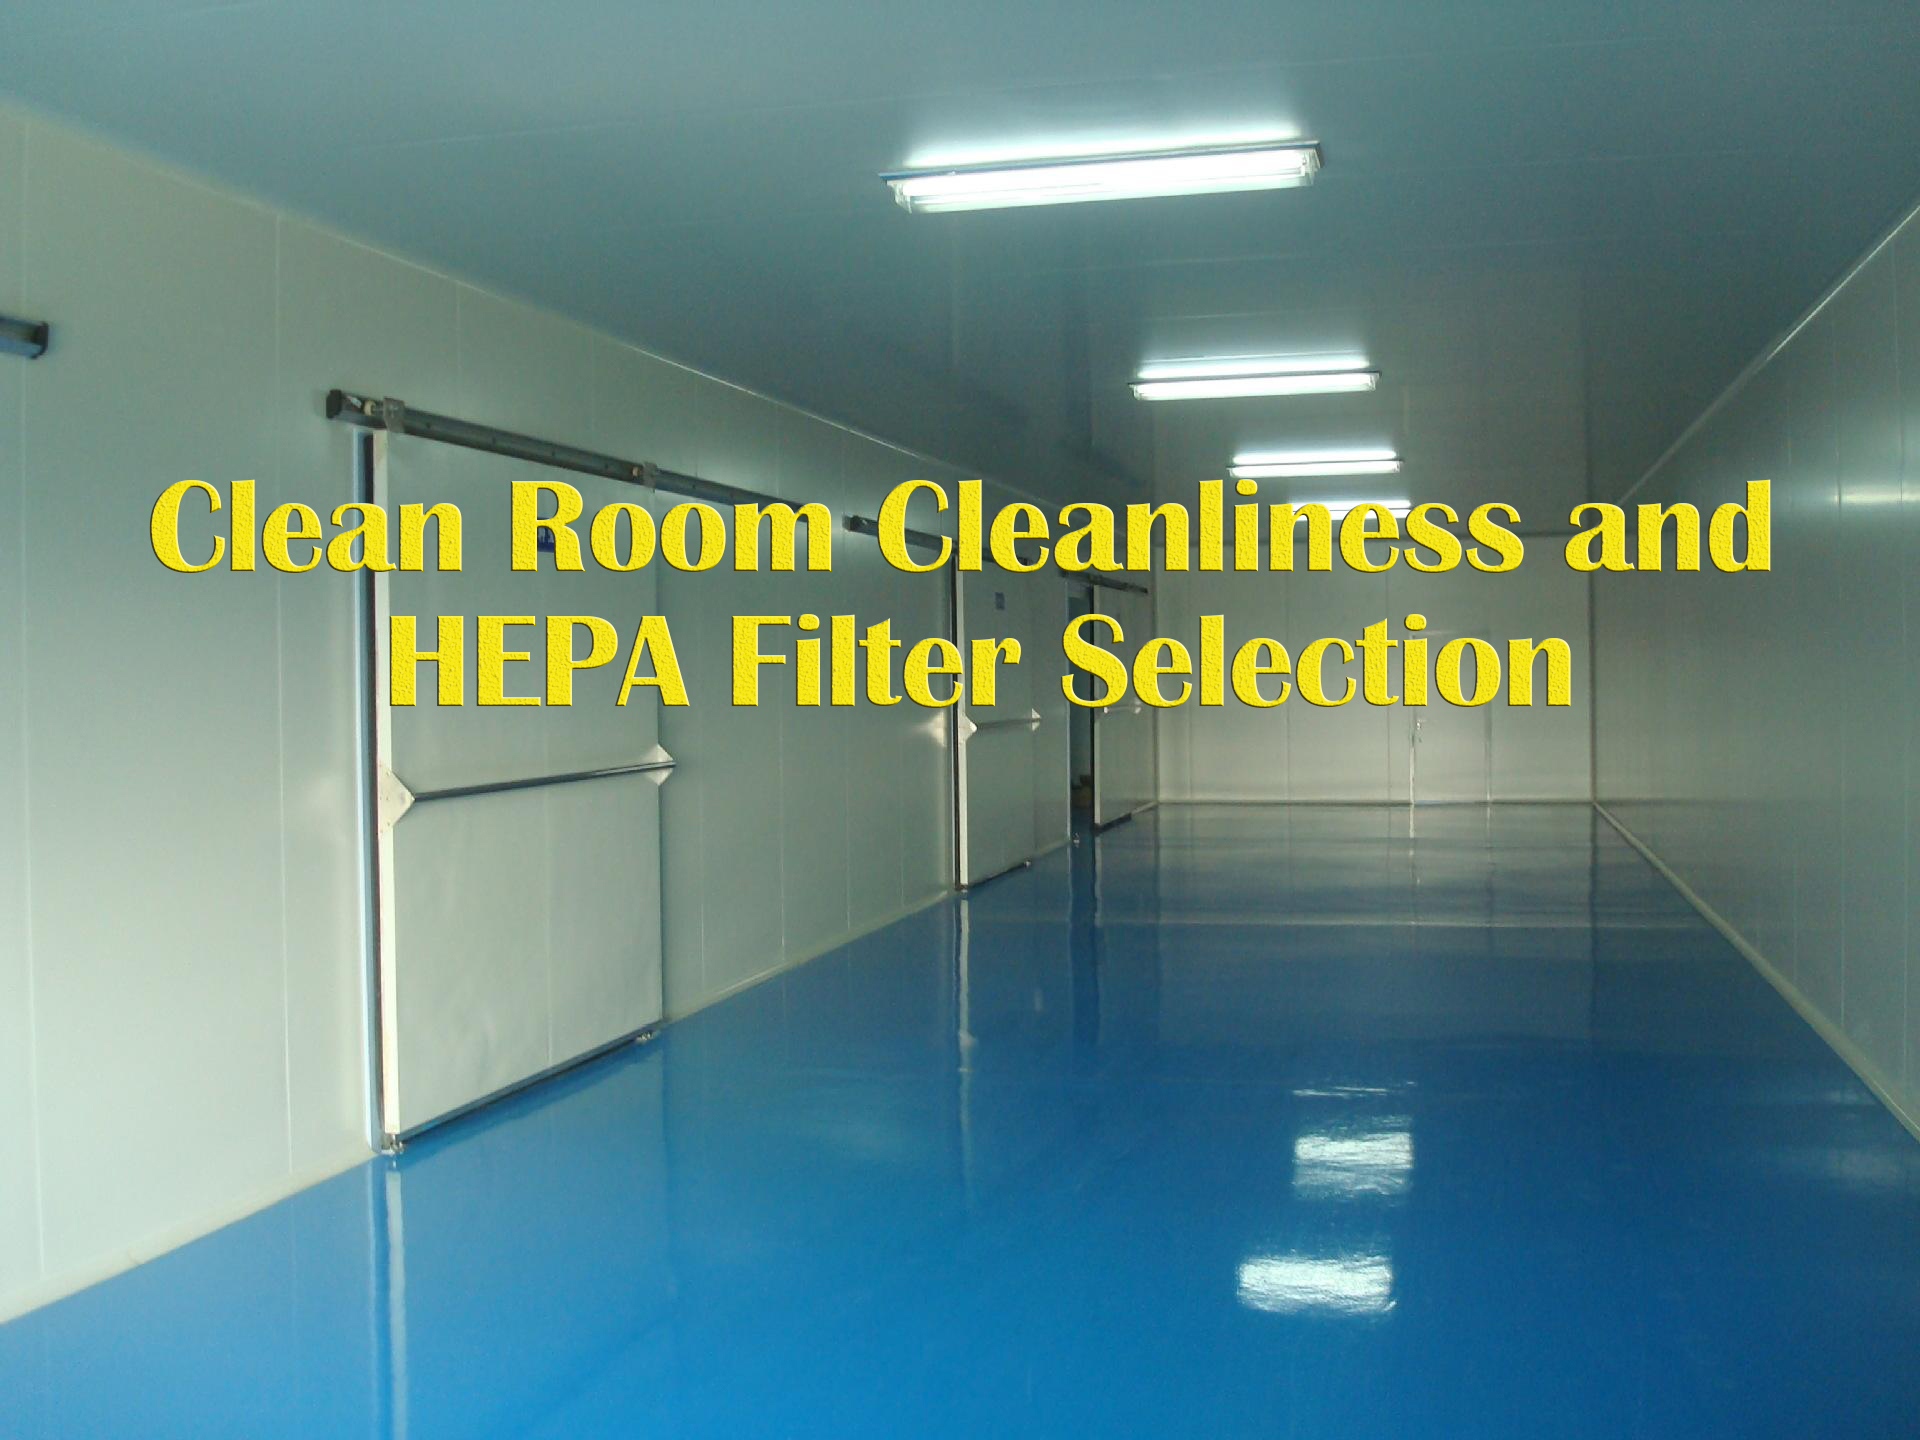 洁净室洁净度与高效过滤器过滤效率等级选择的误区